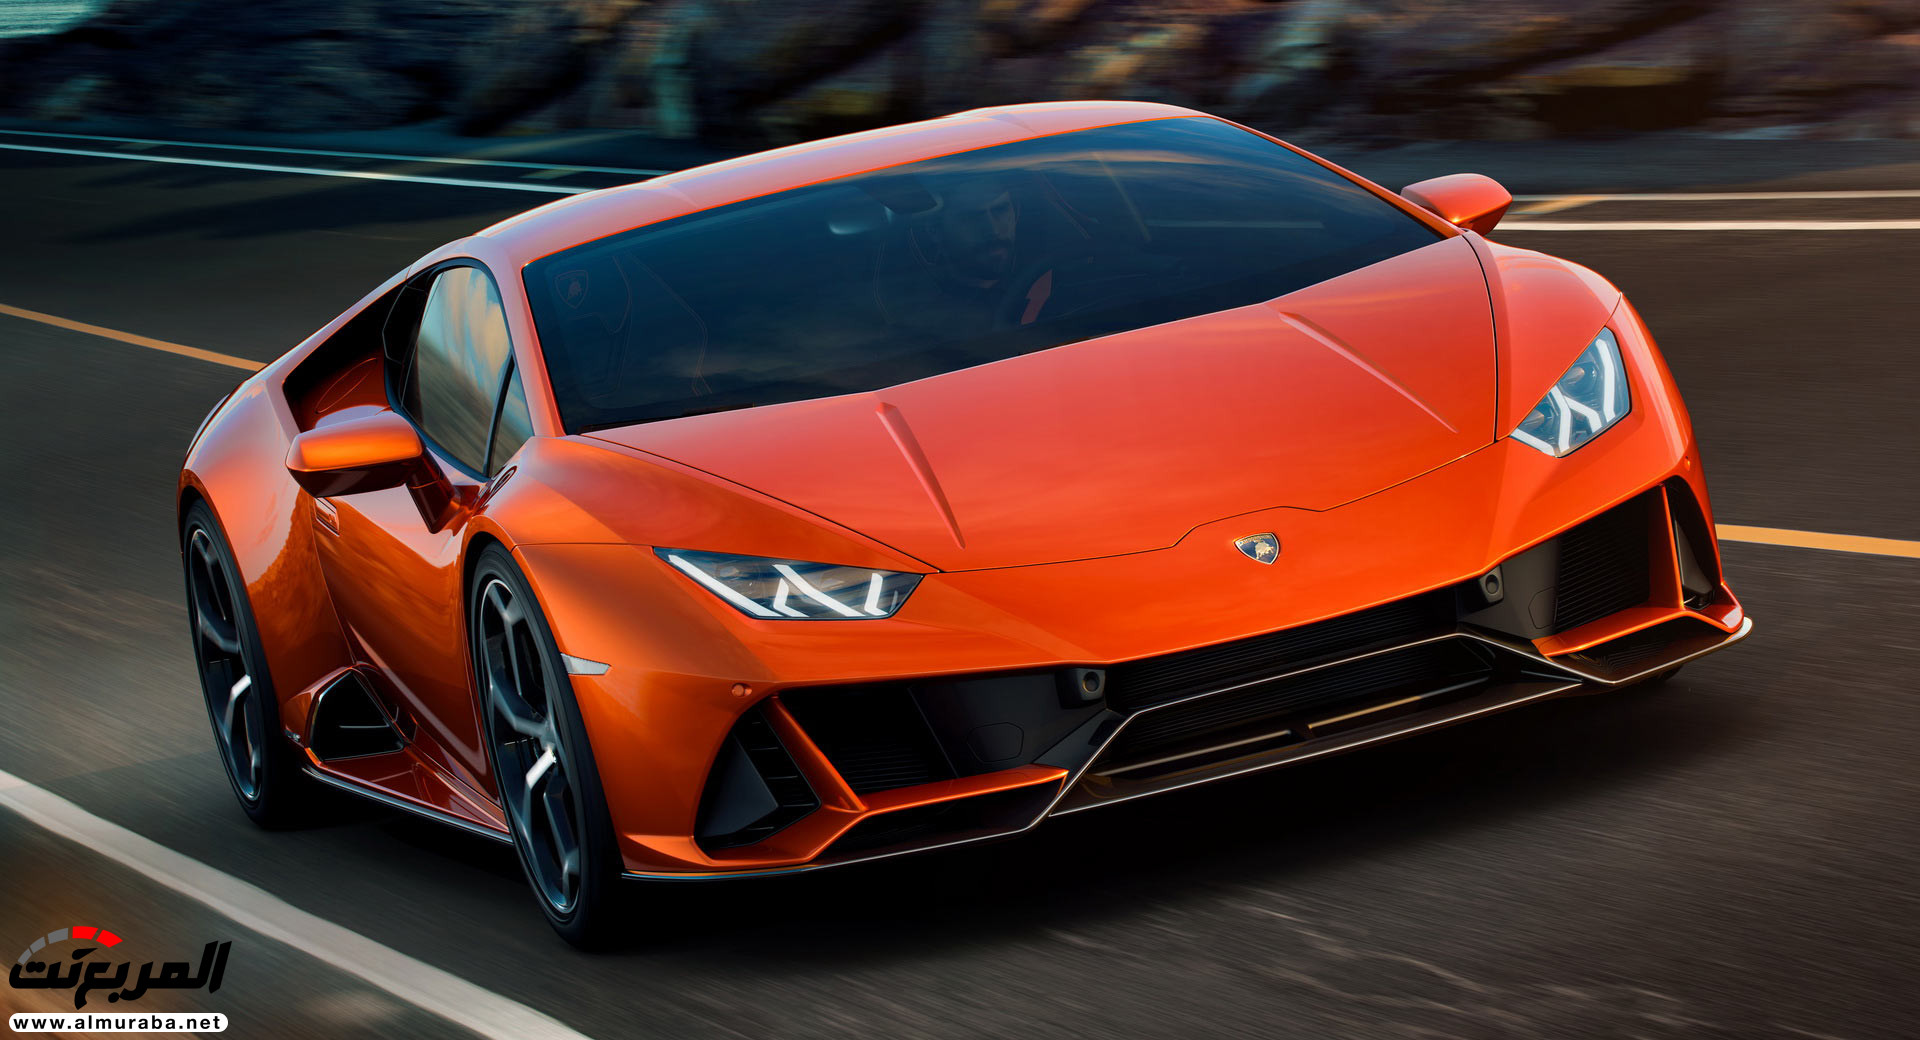 “بالصور” الدليل الشامل لأبرز السيارات التي ستنطلق في معرض جنيف للسيارات 2019 22